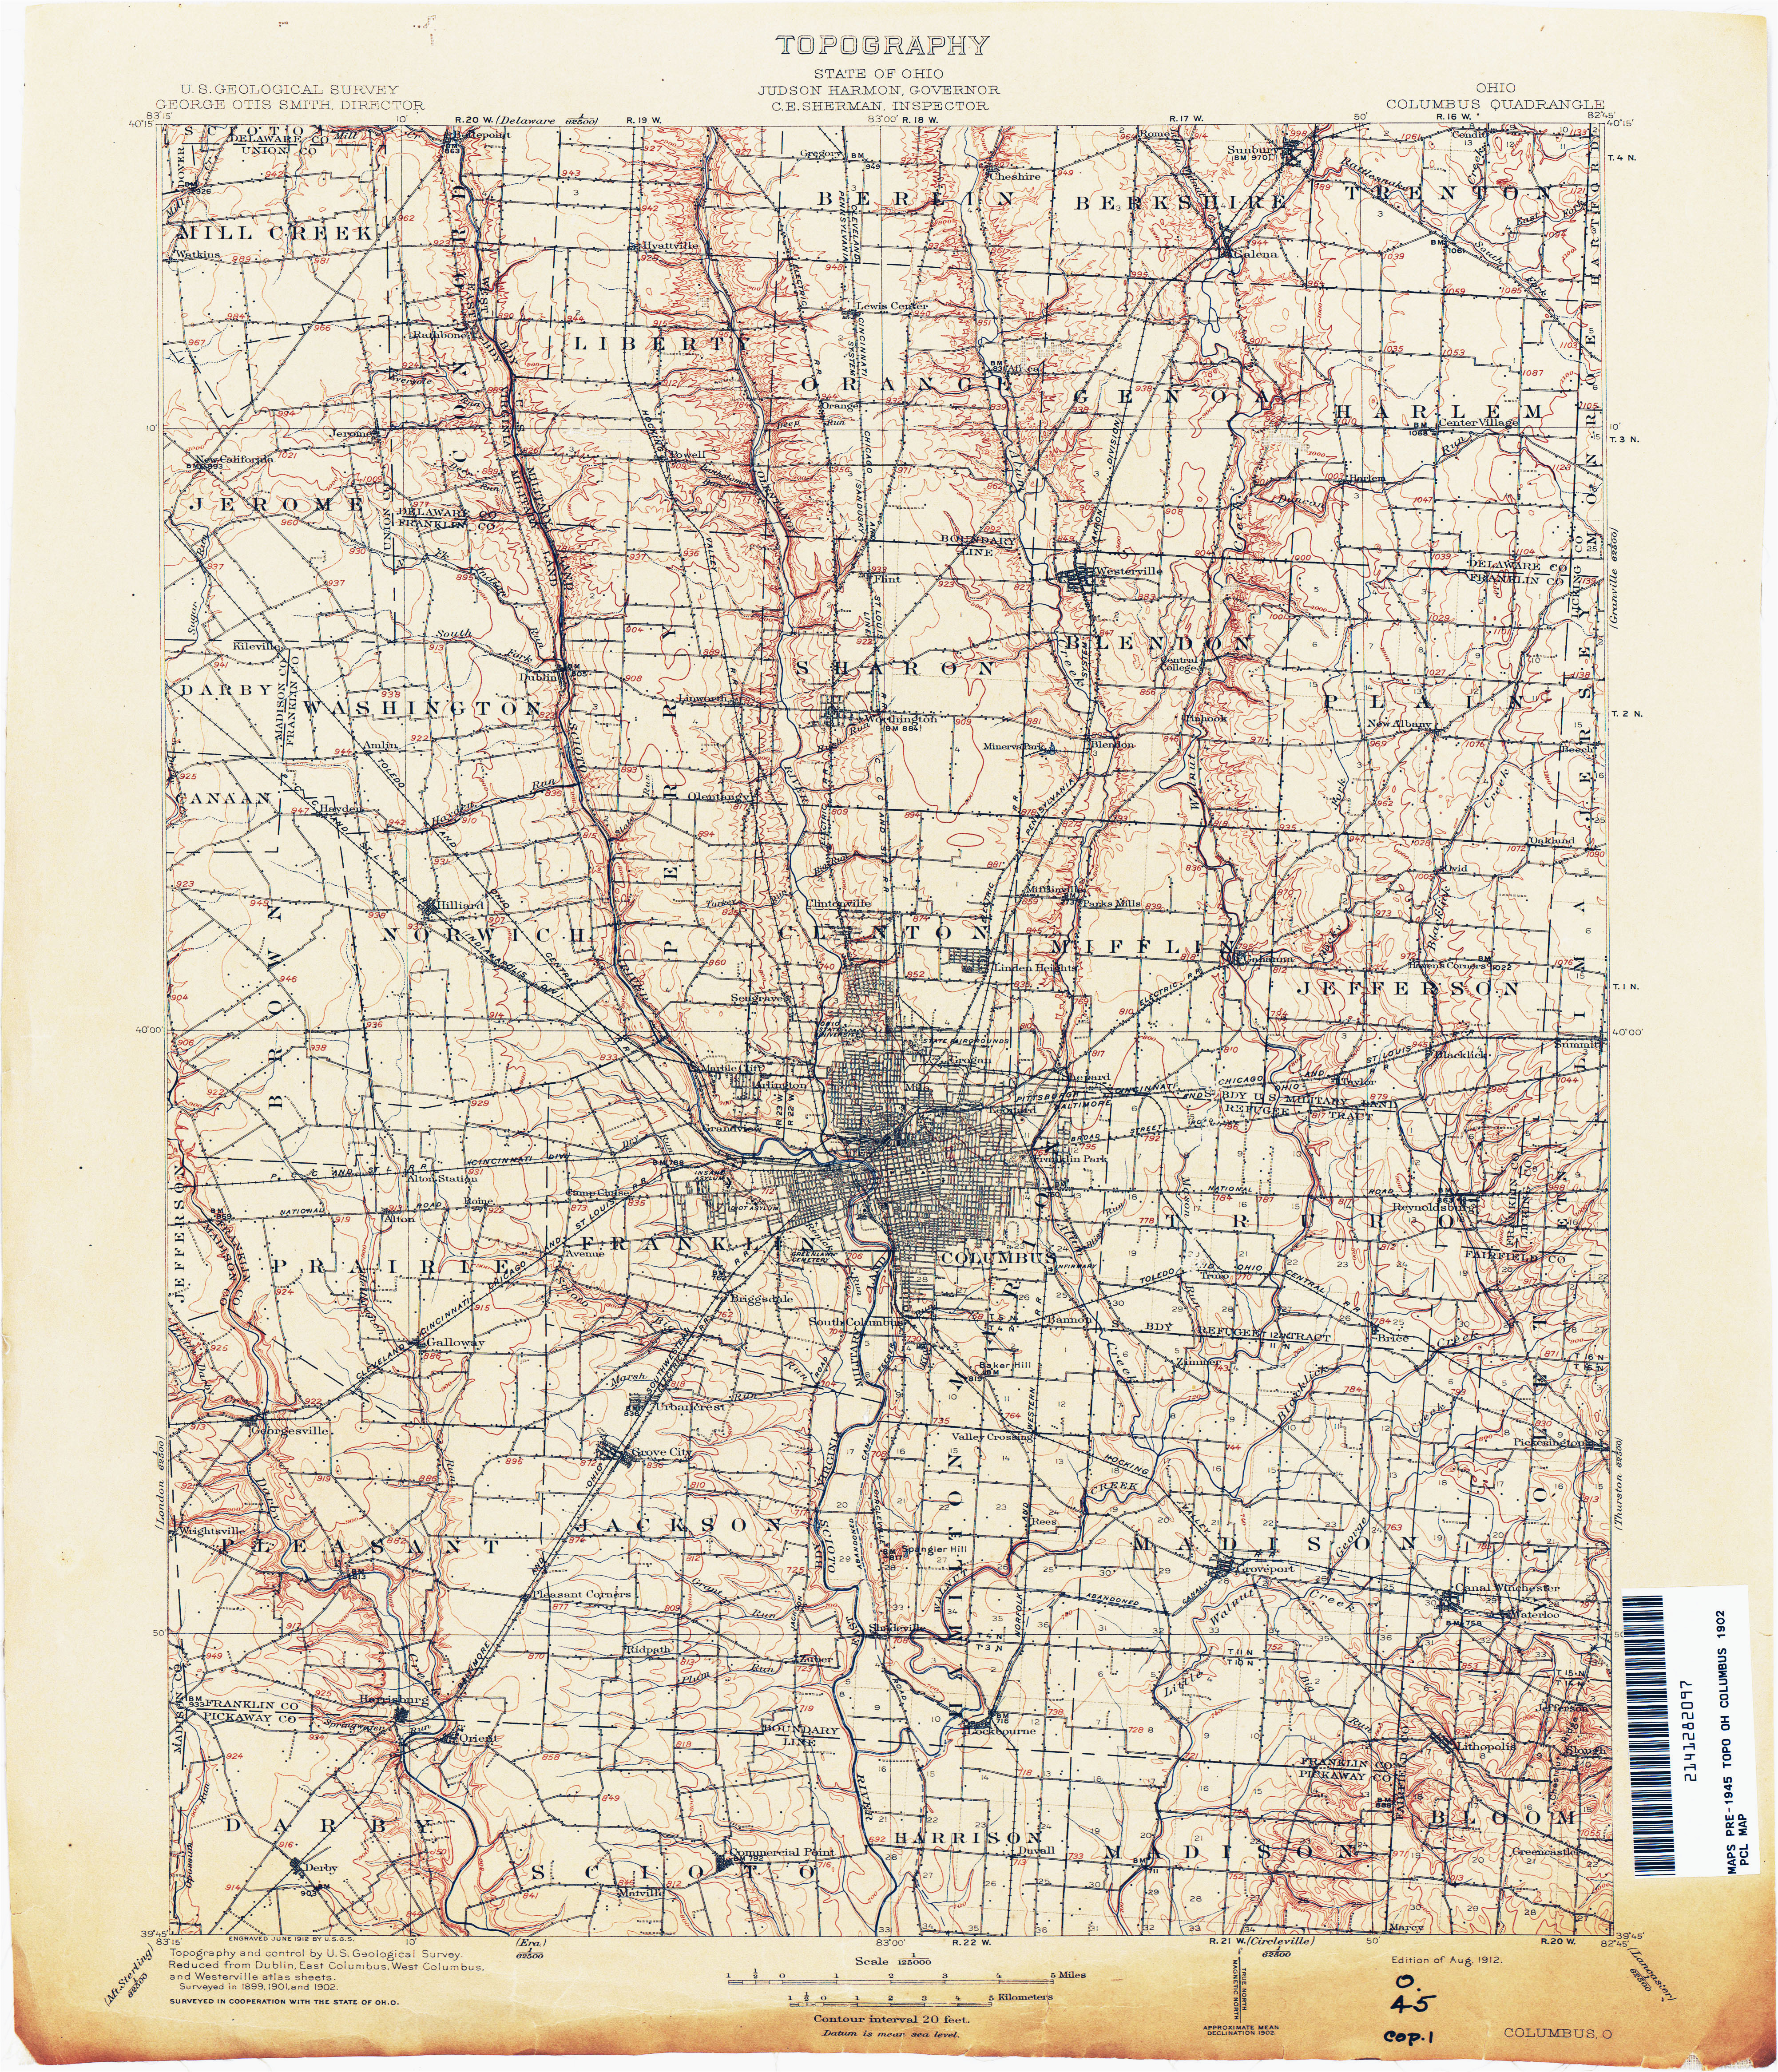 celina ohio map ohio historical topographic maps perry castaa eda